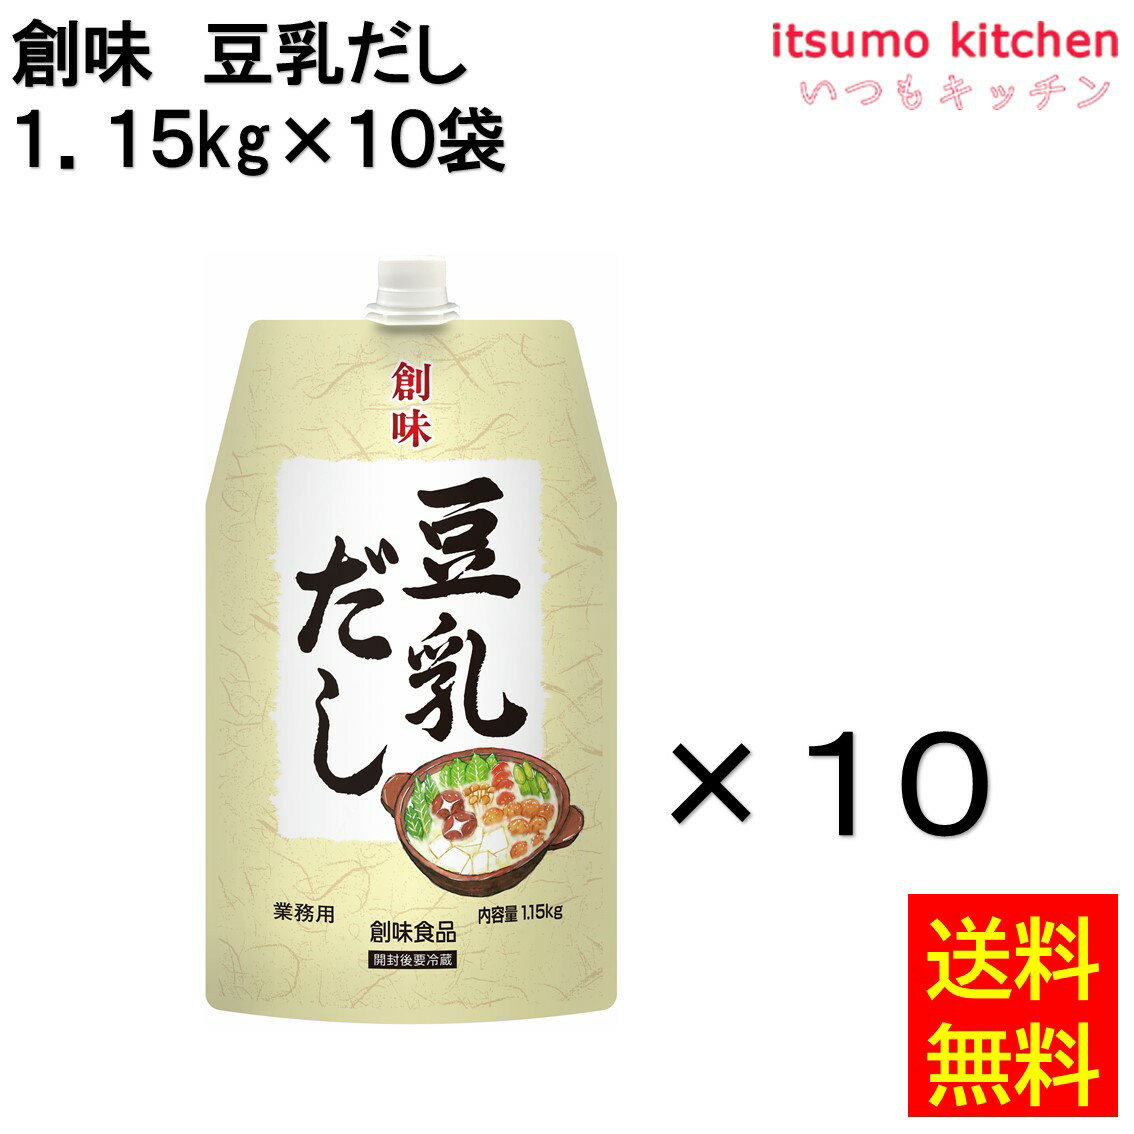 【送料無料】創味 豆乳だし 1.15kg×10袋 創味食品